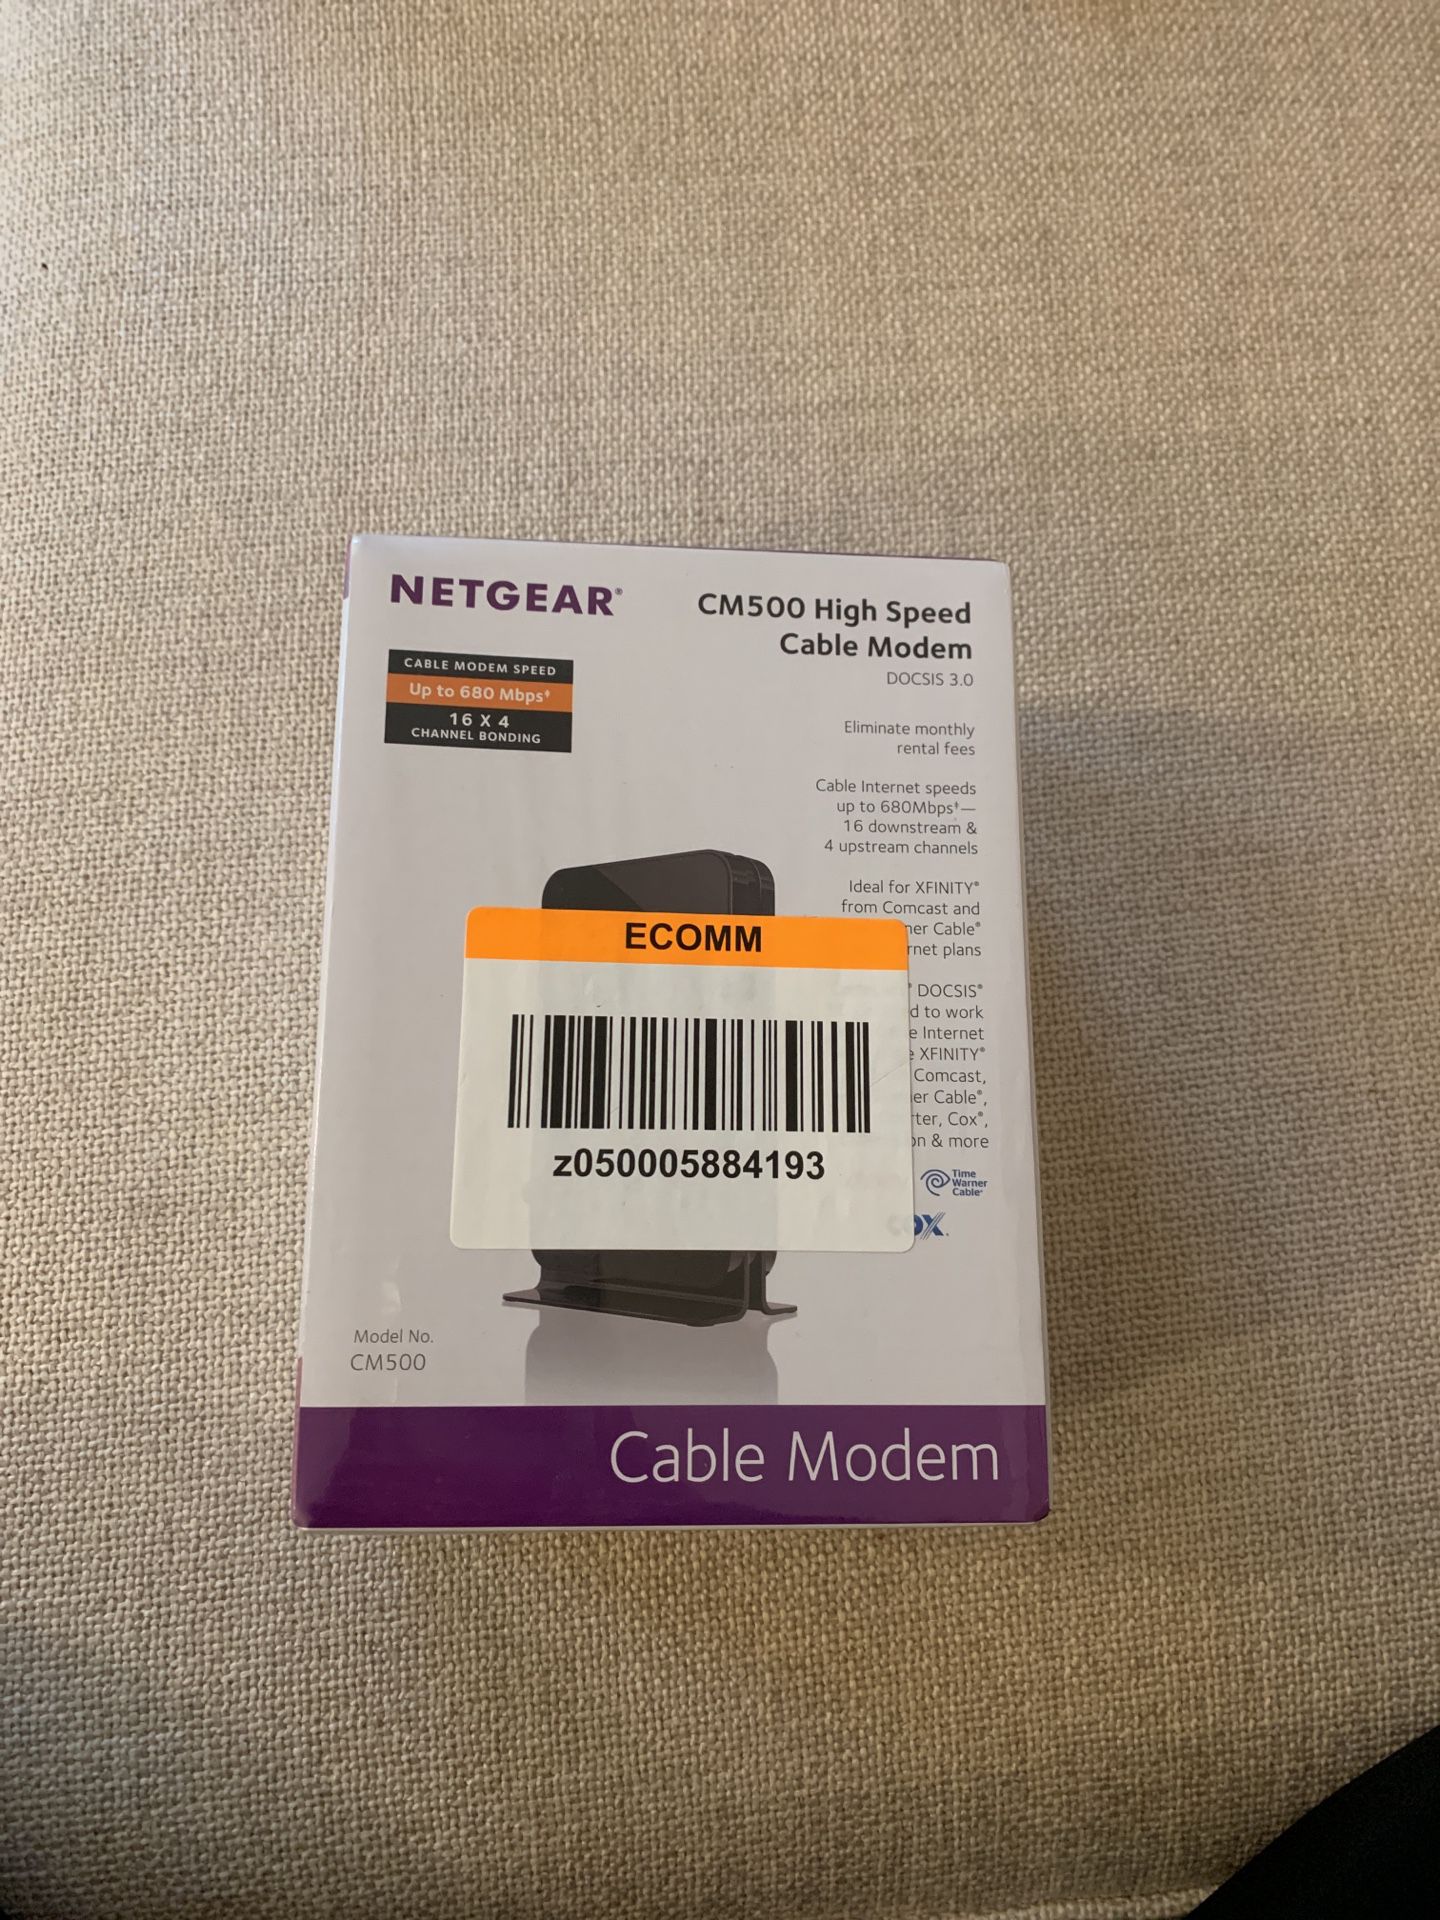 NETGEAR CM500 high speed cable modem